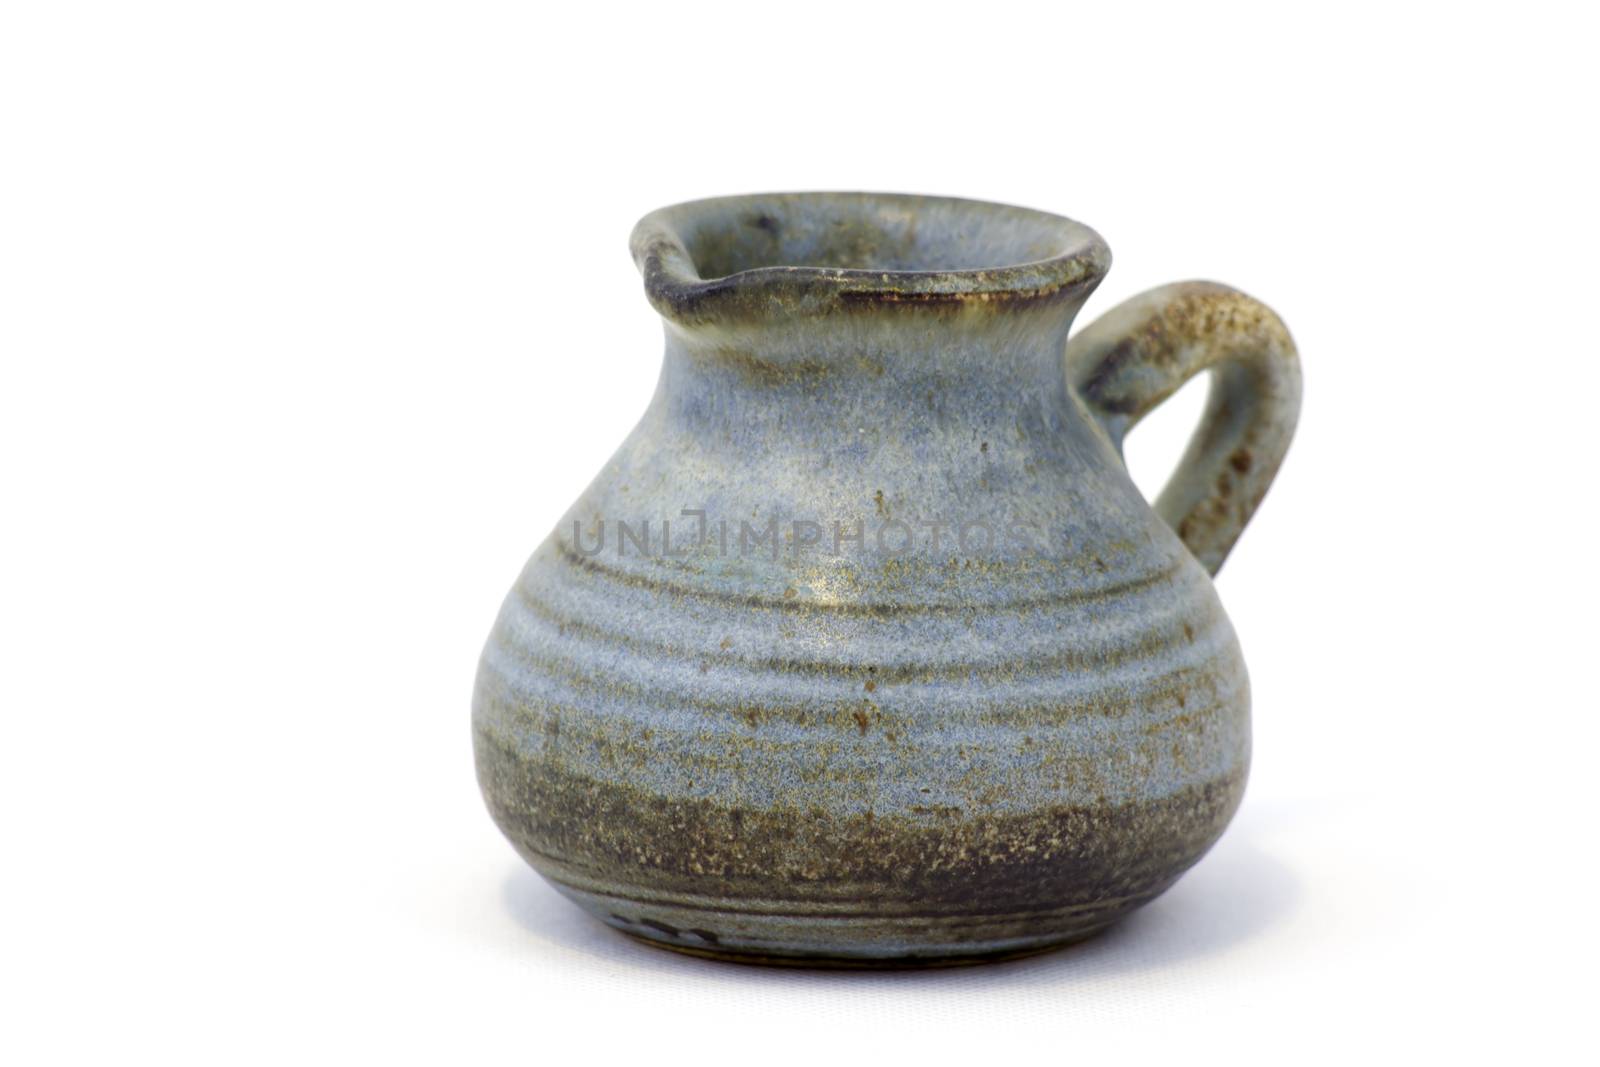 Clay jug, old ceramic vase isolated on white background